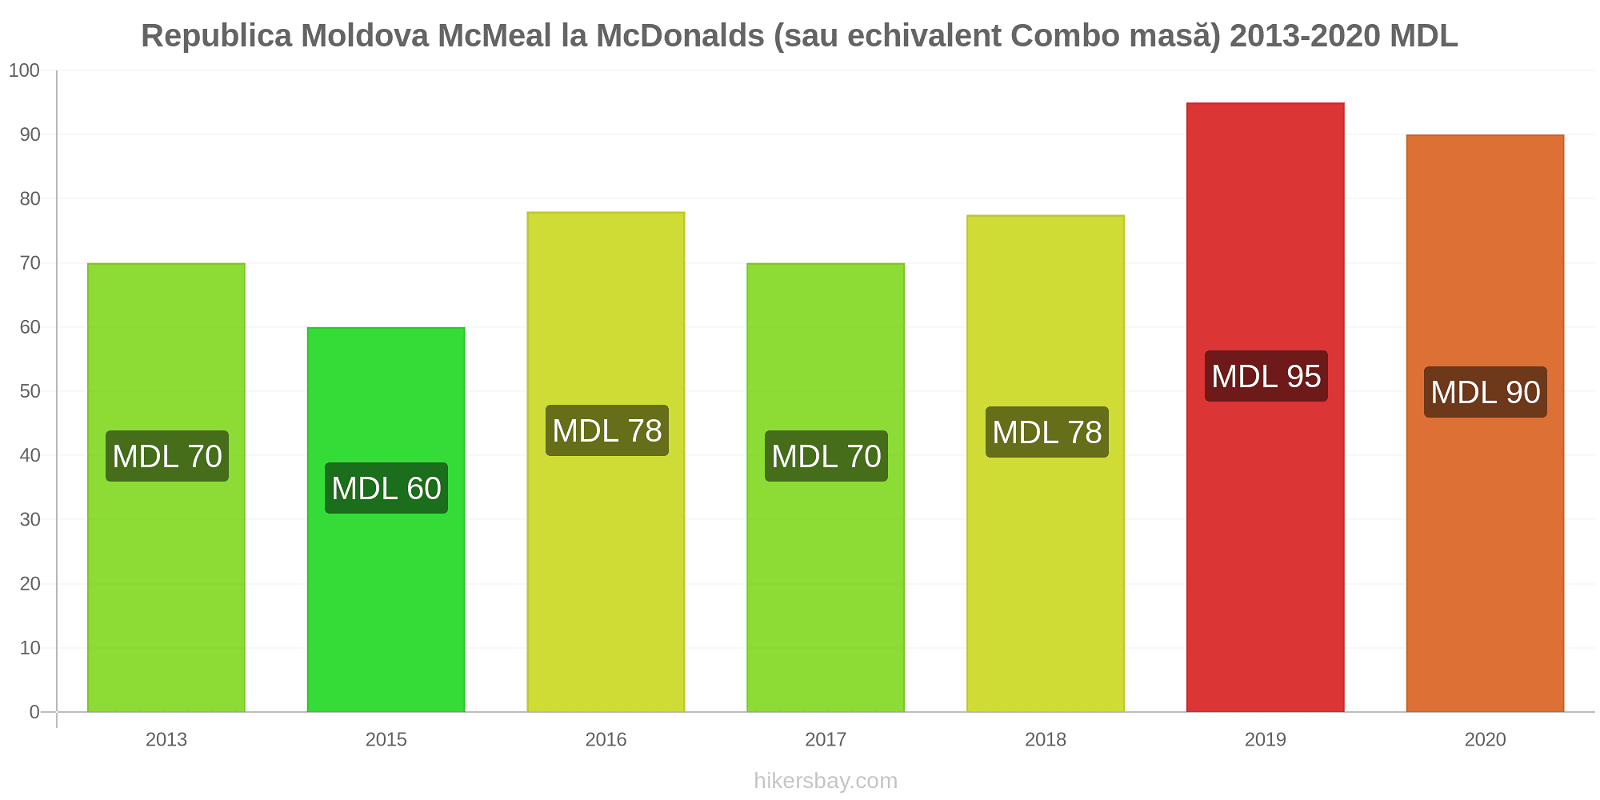 Republica Moldova modificări de preț McMeal la McDonalds (sau echivalent Combo masă) hikersbay.com